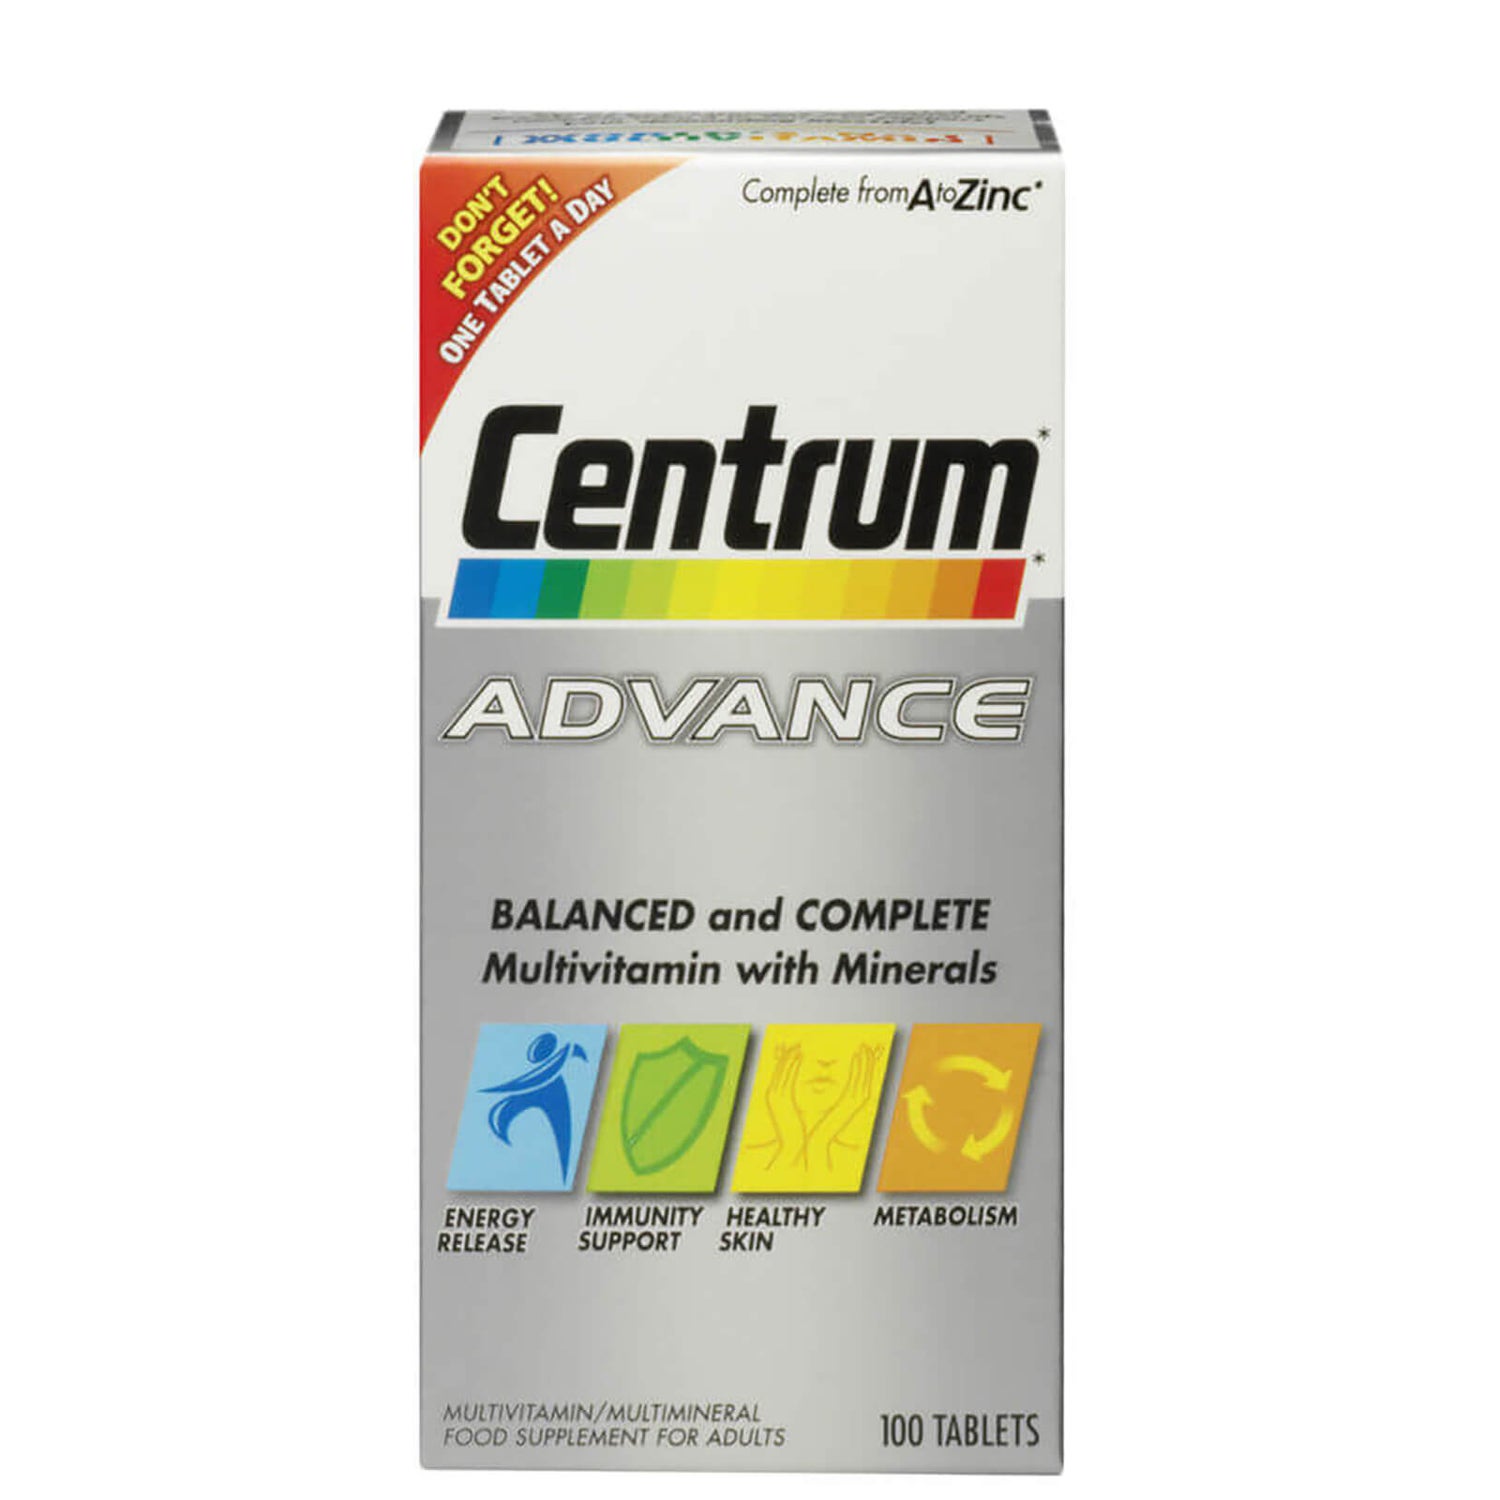 Comprimidos multivitamínicos Advance de Centrum - (60 comprimidos)